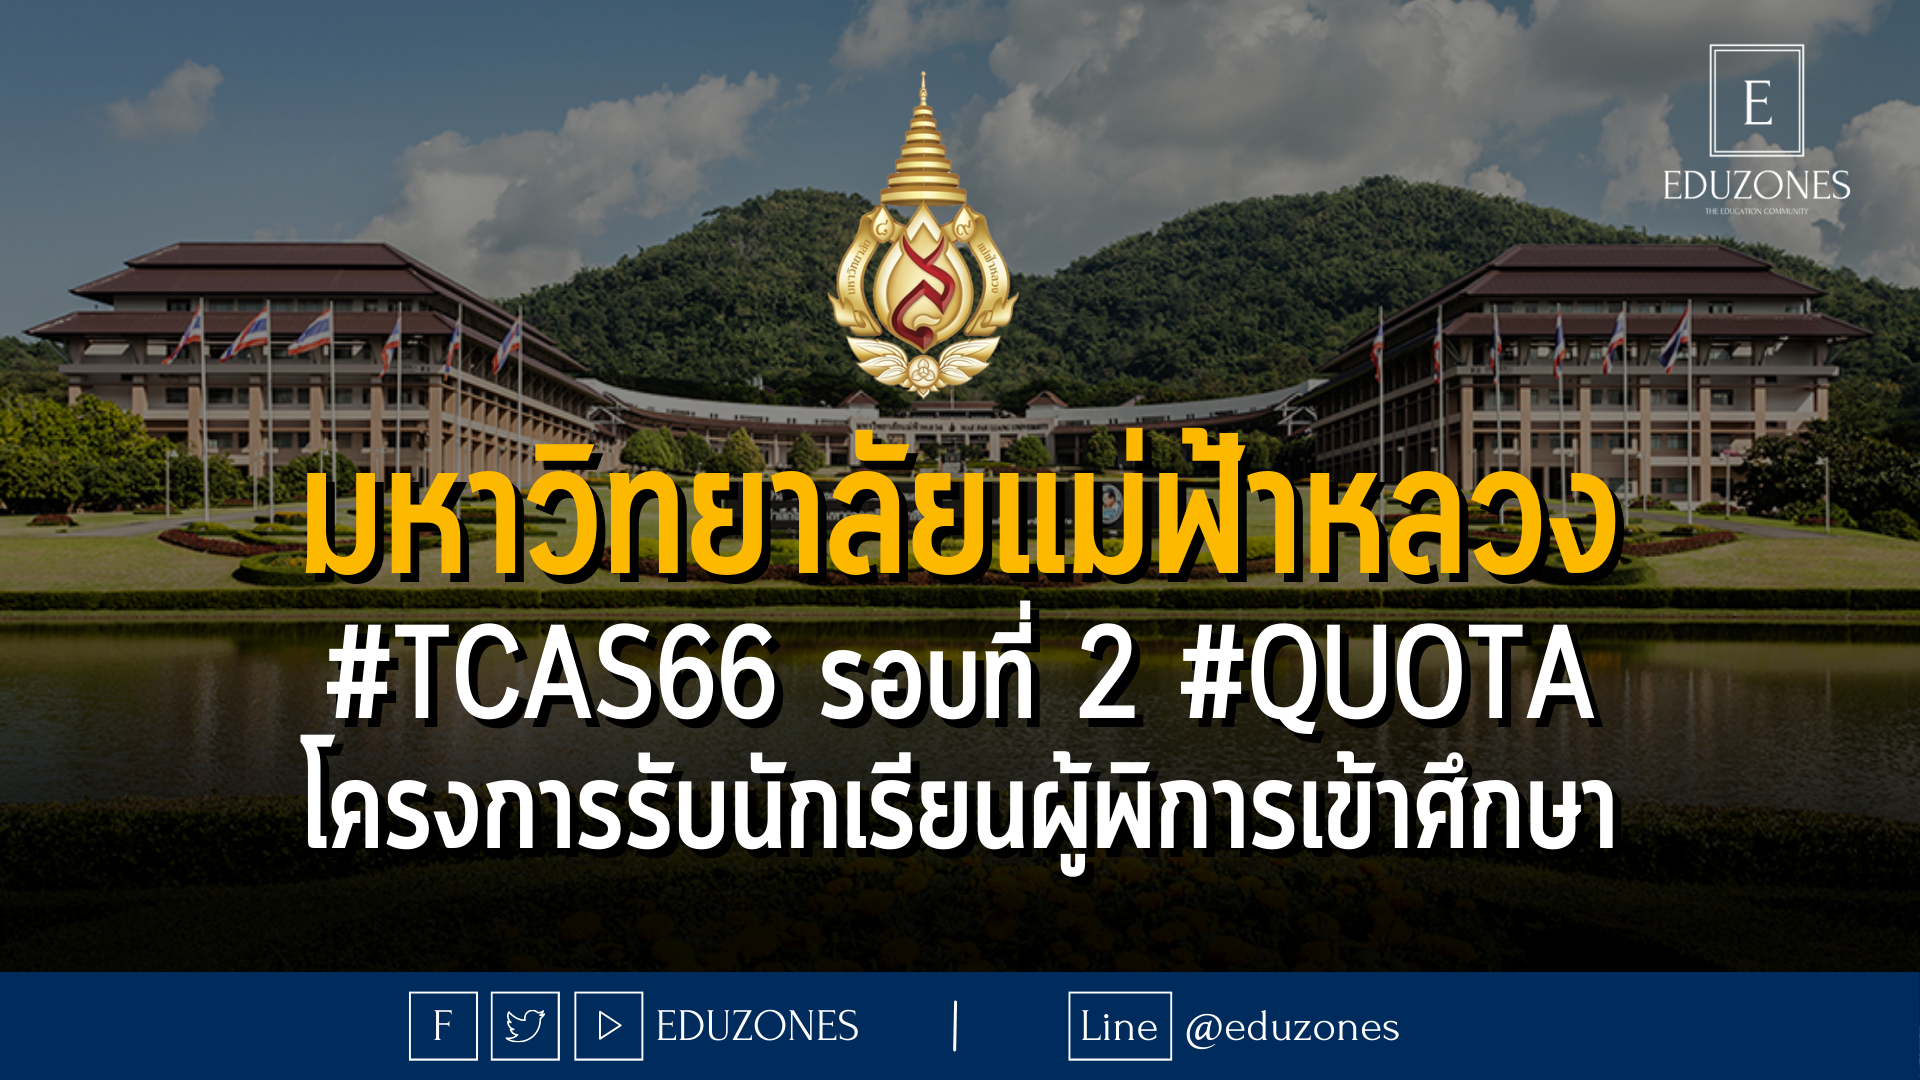 มหาวิทยาลัยแม่ฟ้าหลวง #TCAS66 รอบที่ 2 #quota โครงการรับนักเรียนผู้พิการเข้าศึกษา - หมดเขจ 31 มีนาคม 2566